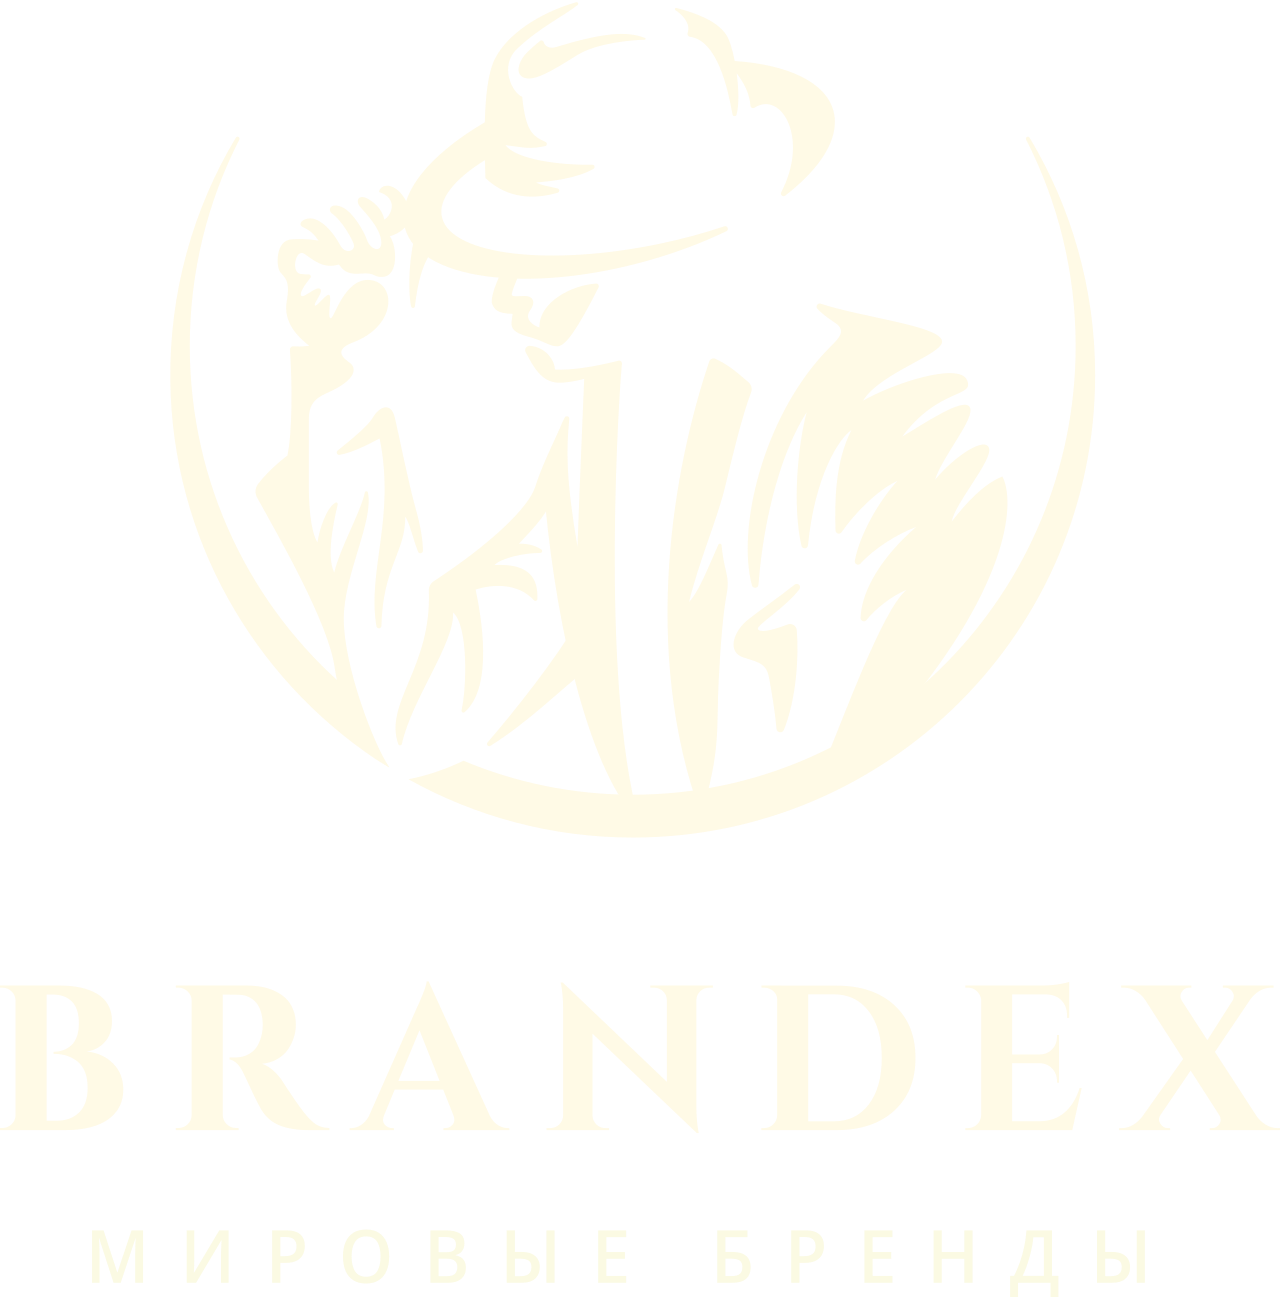 Brandex's logo